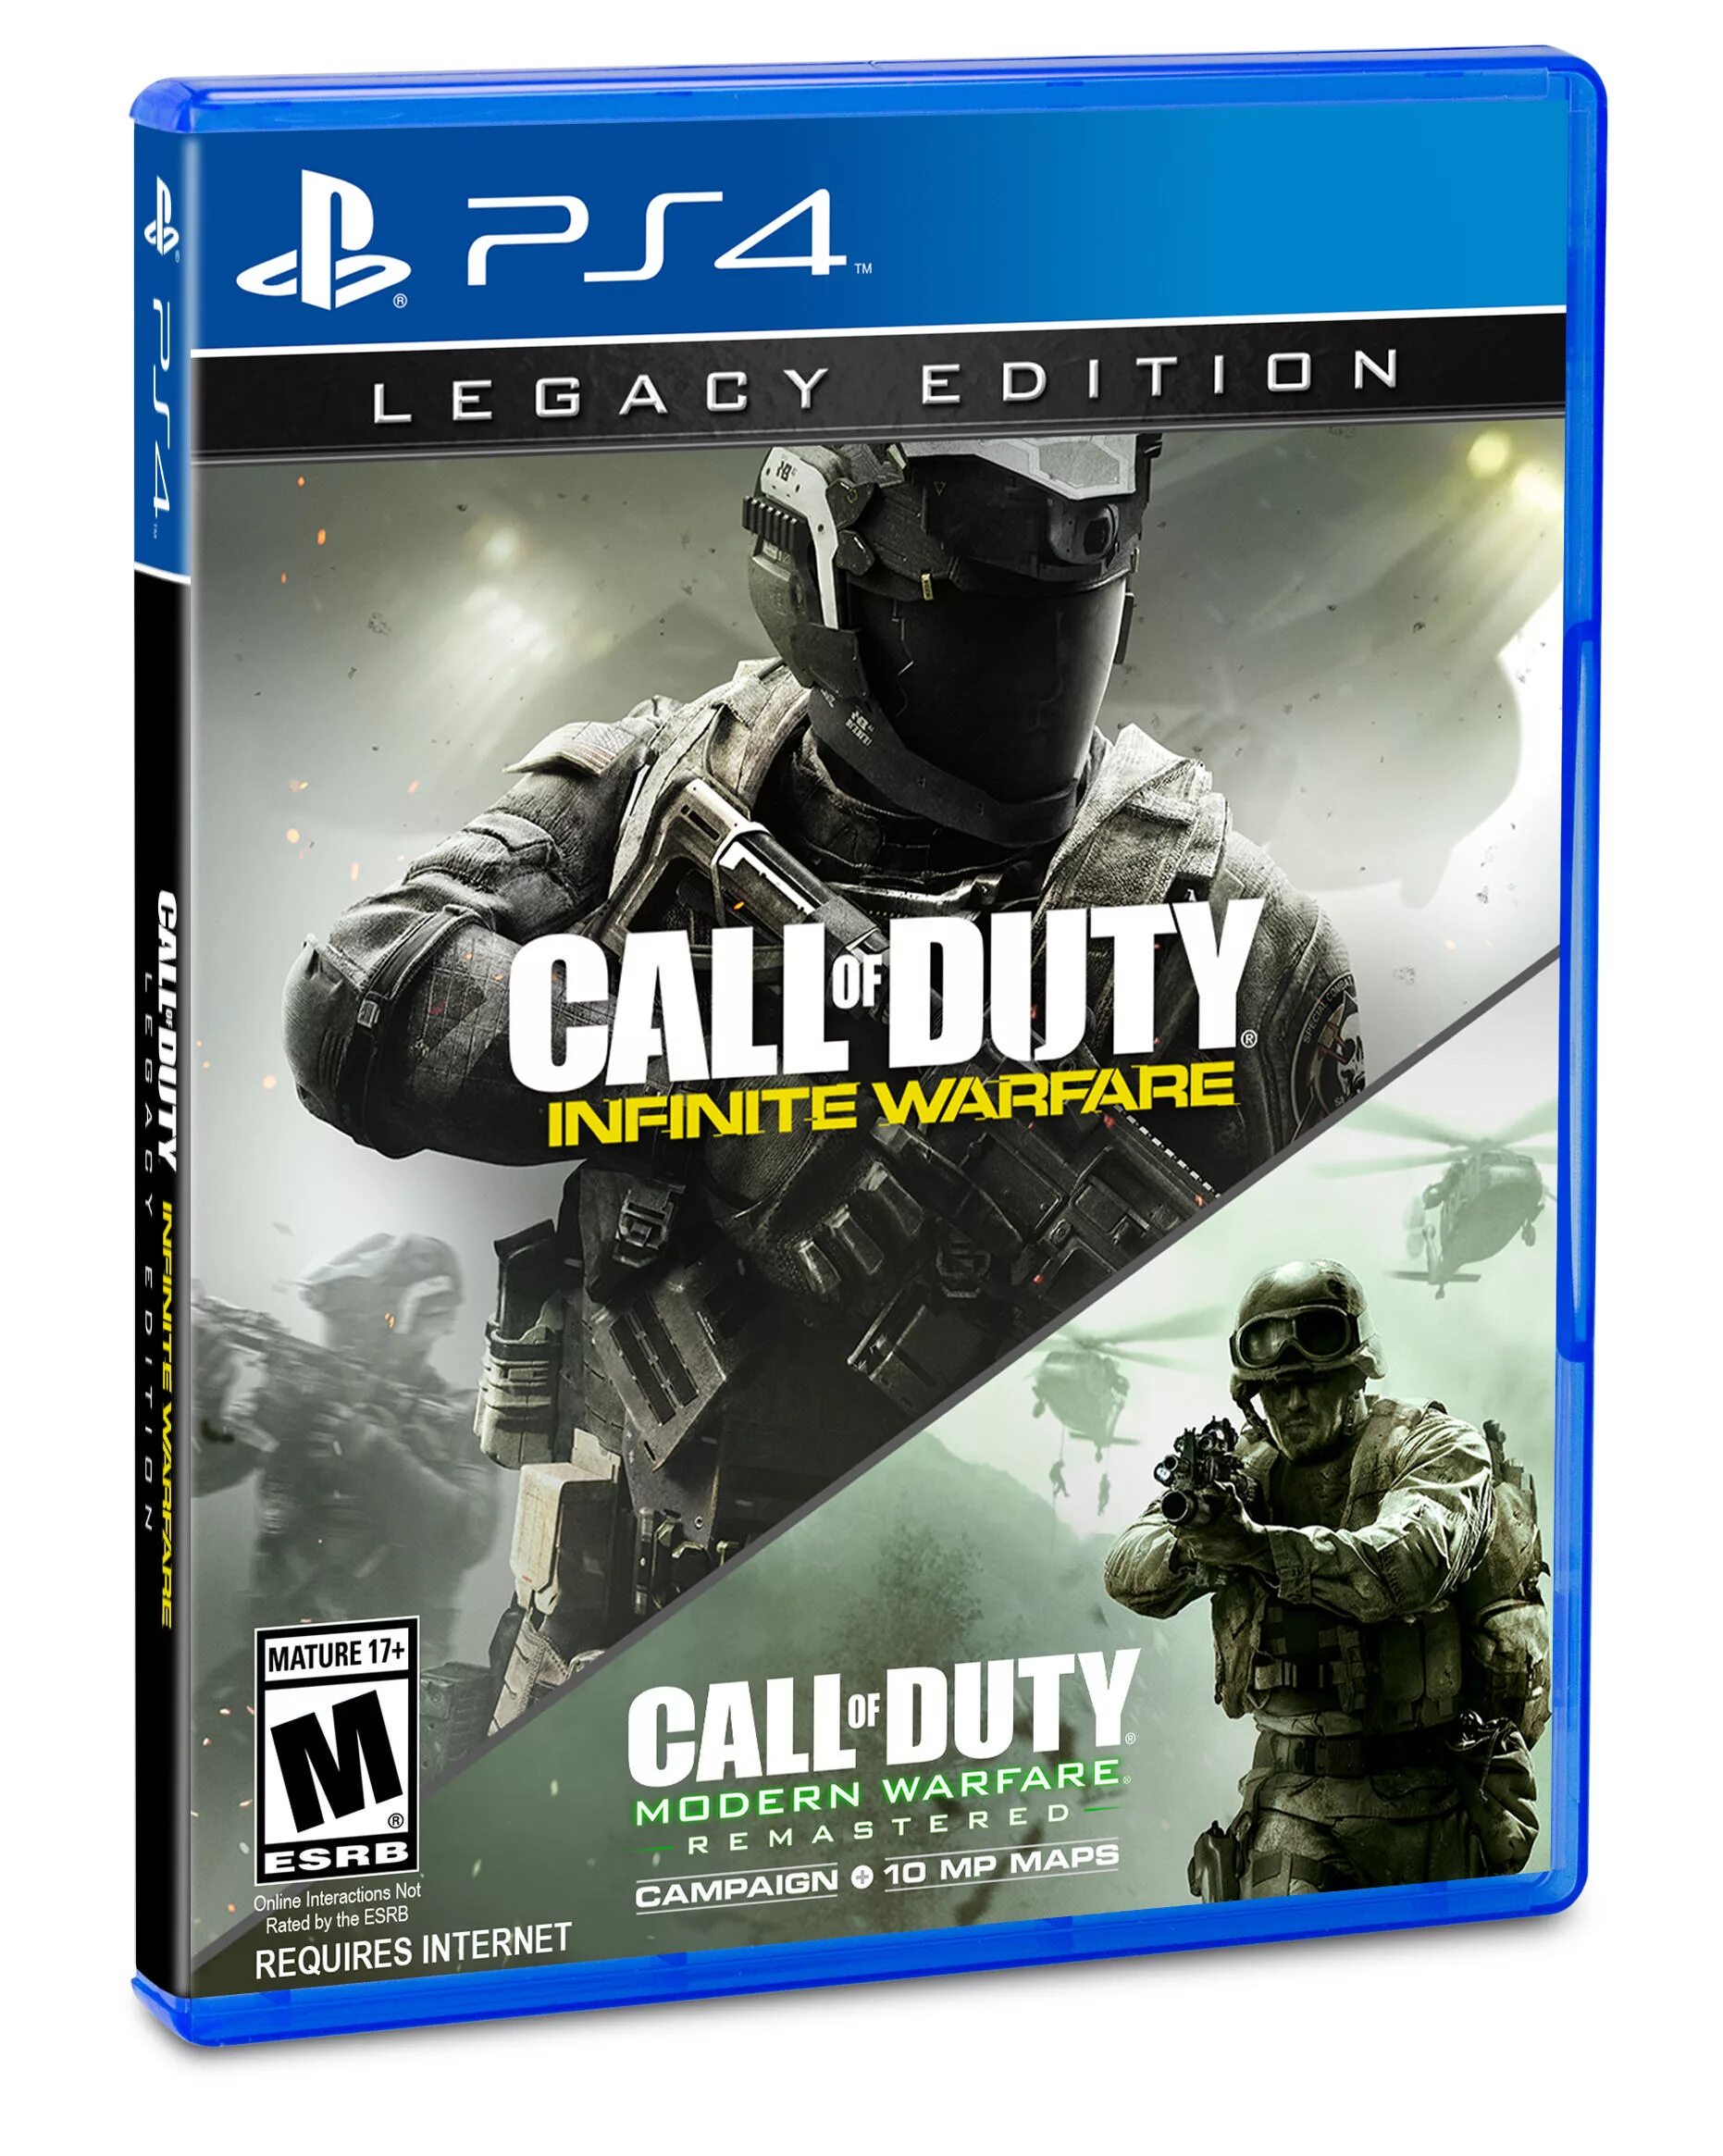 Call of Duty Legacy Edition ps4. Call of Duty Infinite Warfare ps4. Call of Duty Infinity Warfare ps4. Call of Duty Infinite Warfare Legacy Edition. Call of duty modern warfare xbox купить